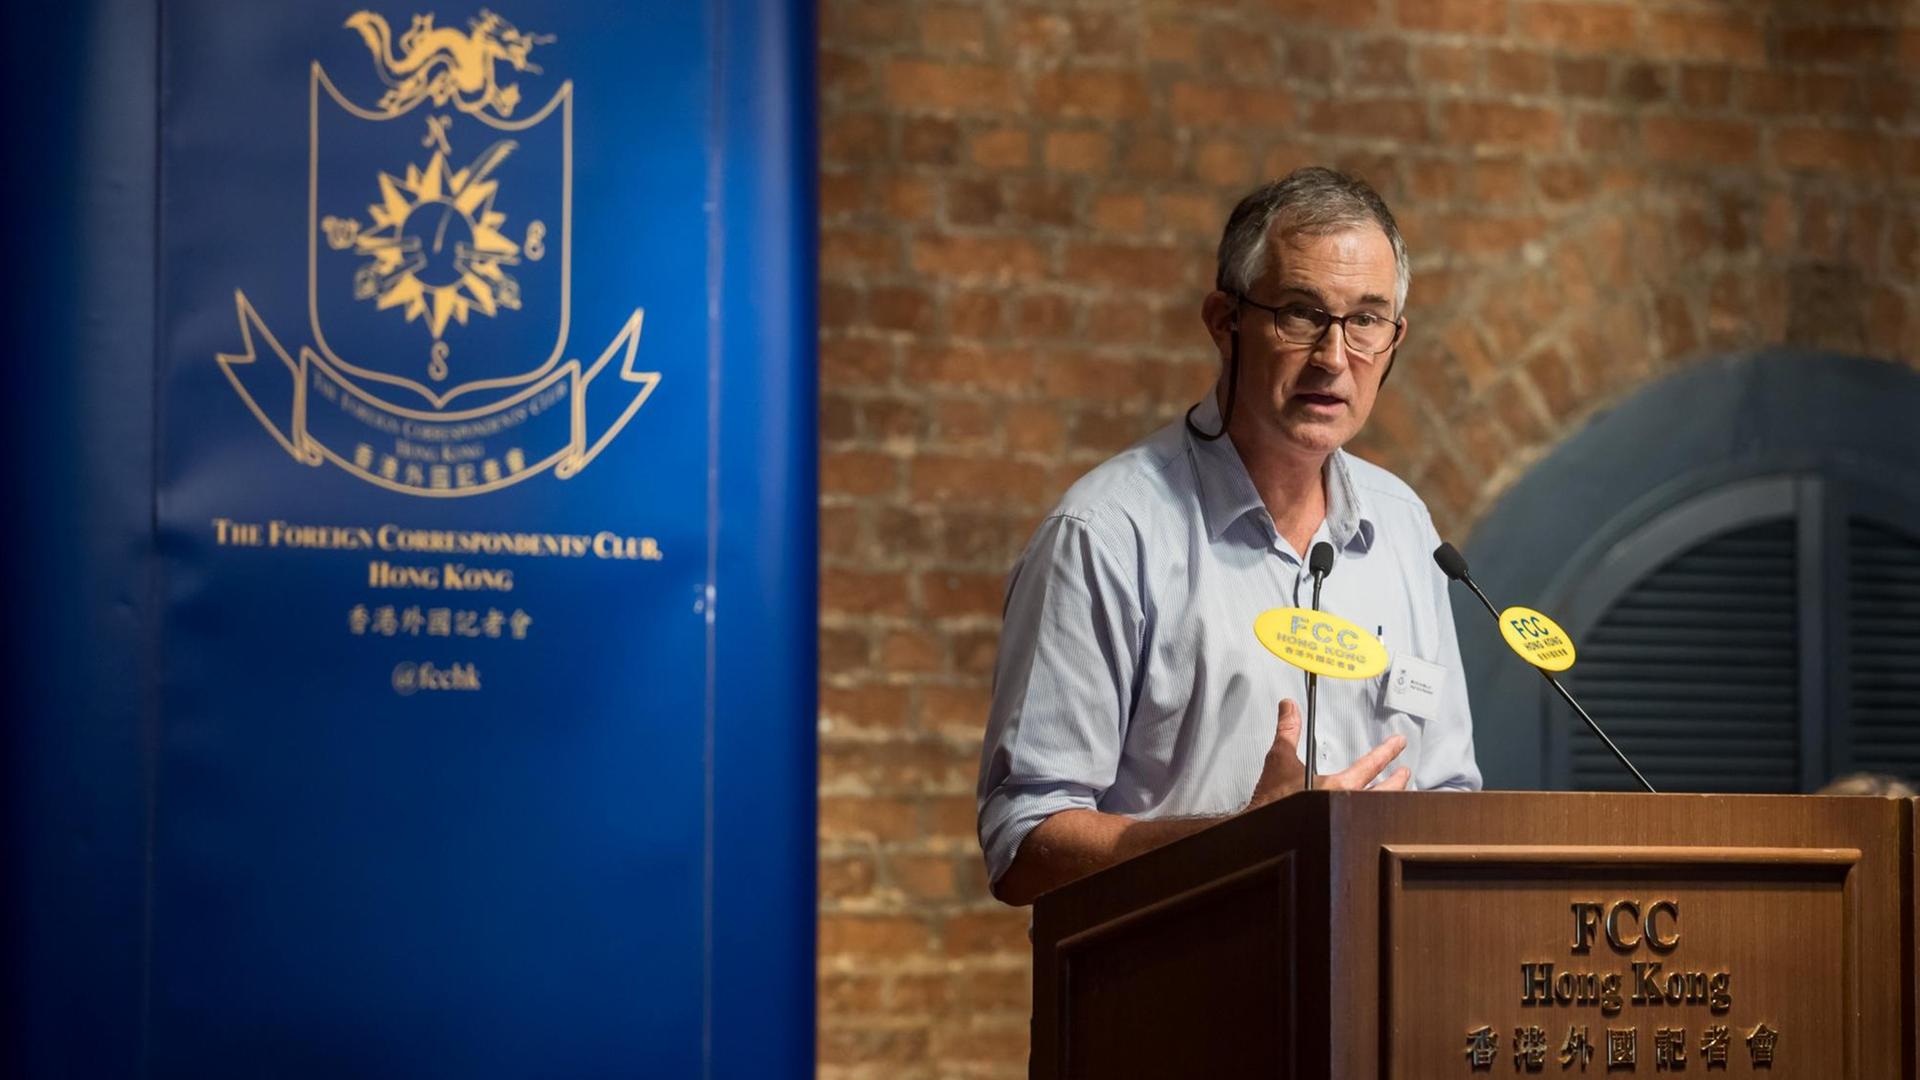 Der britische Journalist Victor Mallet spricht auf der Bühne bei einer Veranstaltung des Clubs ausländischer Korrespondenten in Hongkong.